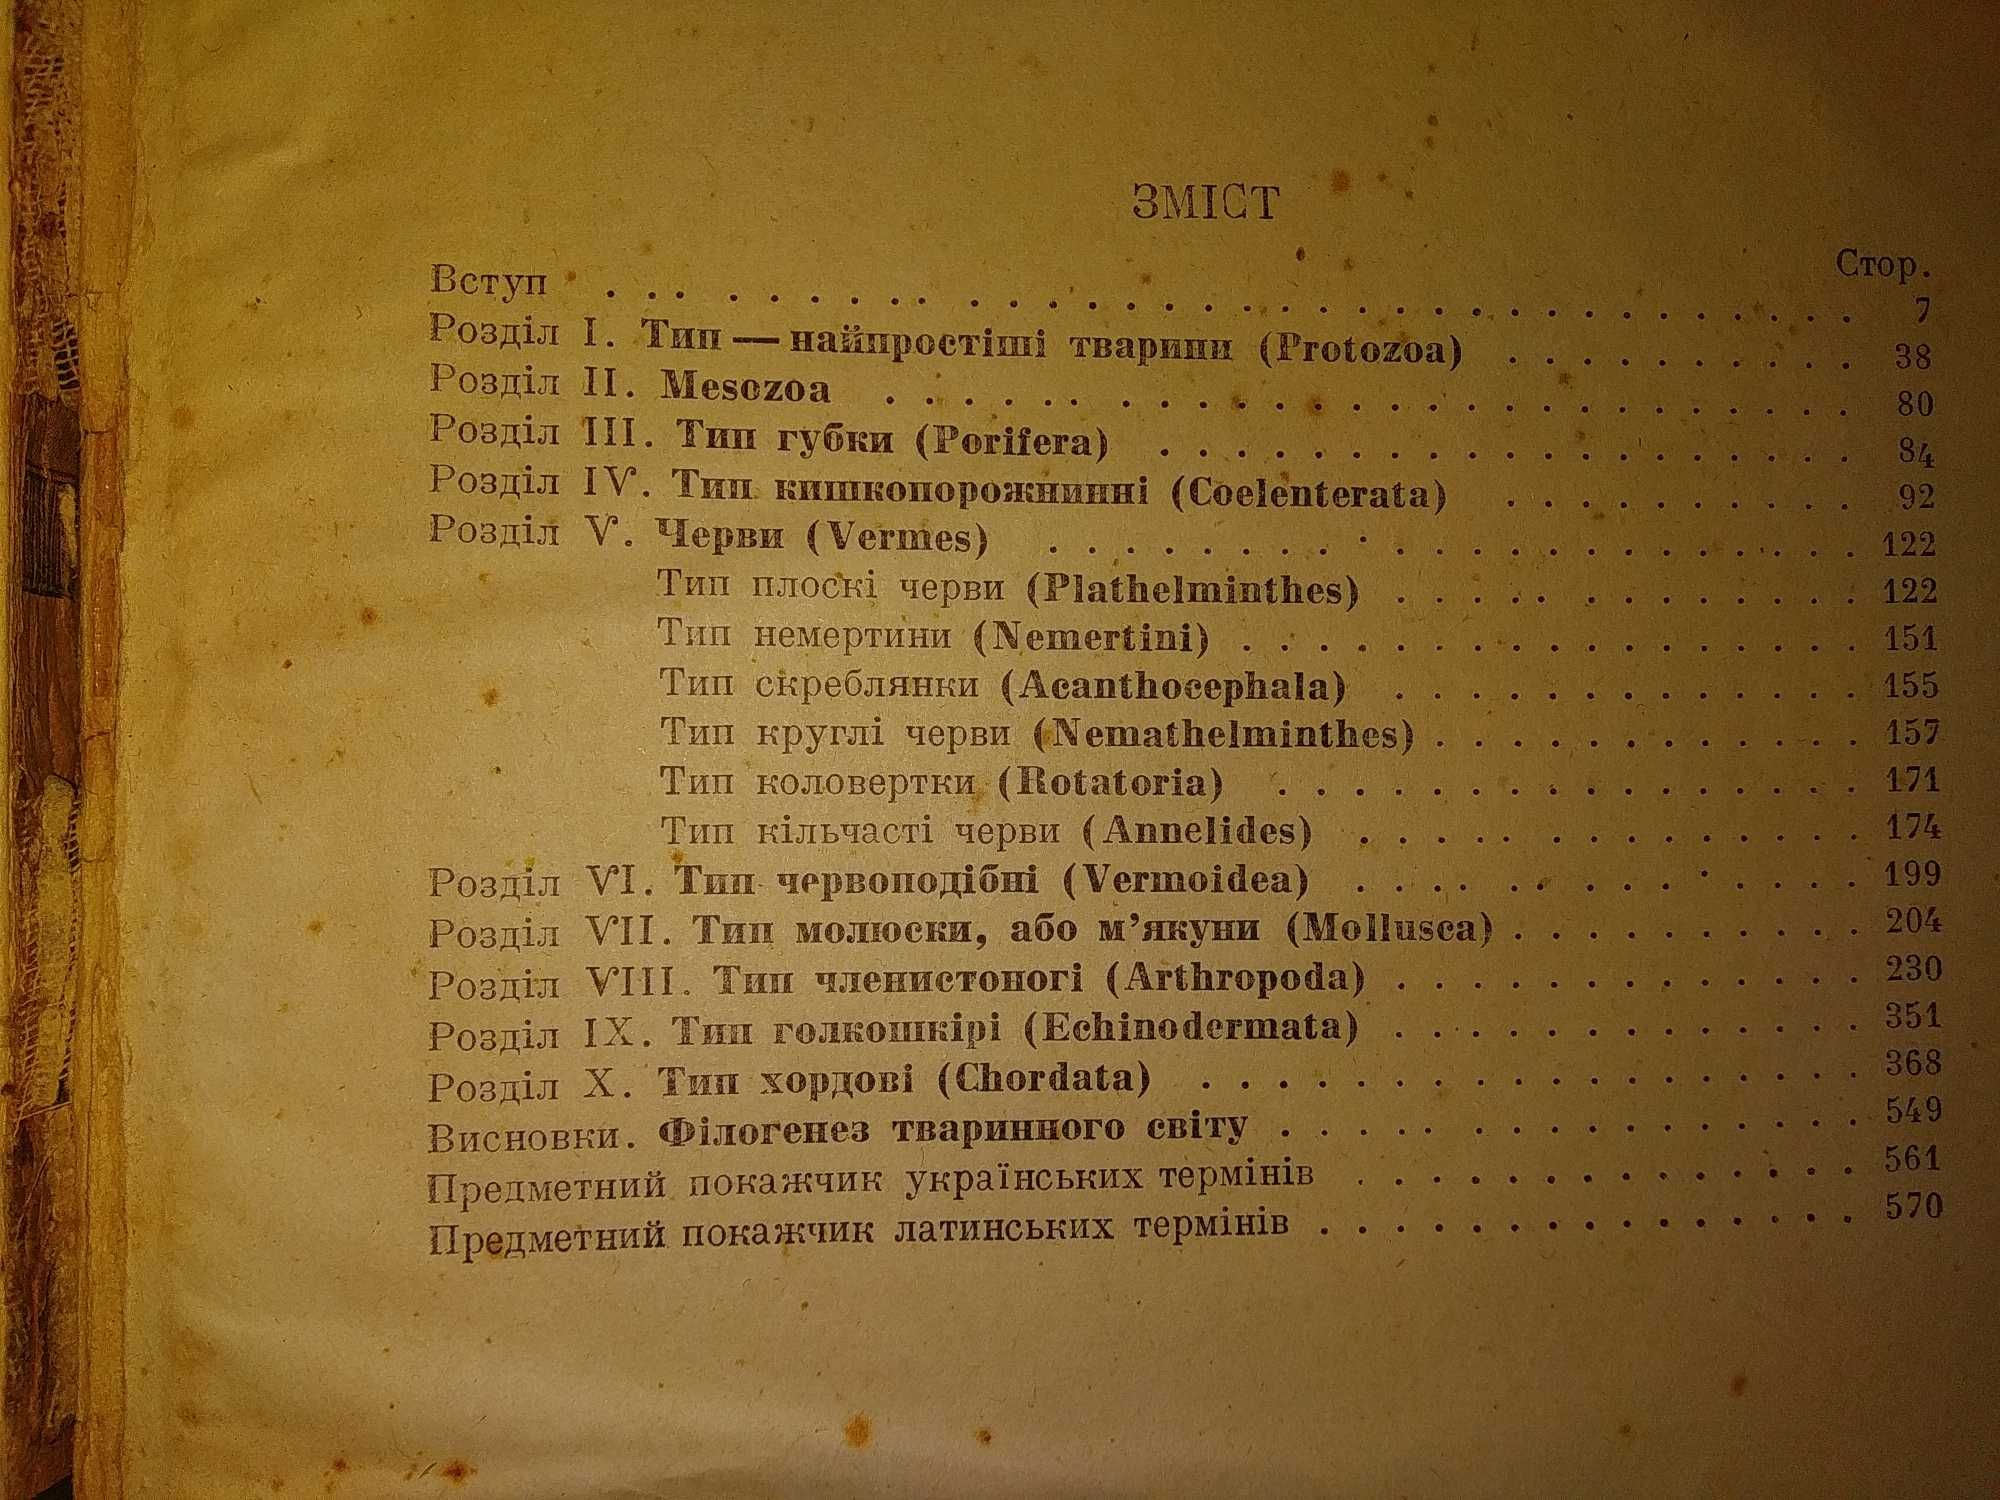 Курс Зоології. вид.  1936 р.  на Українській мові.